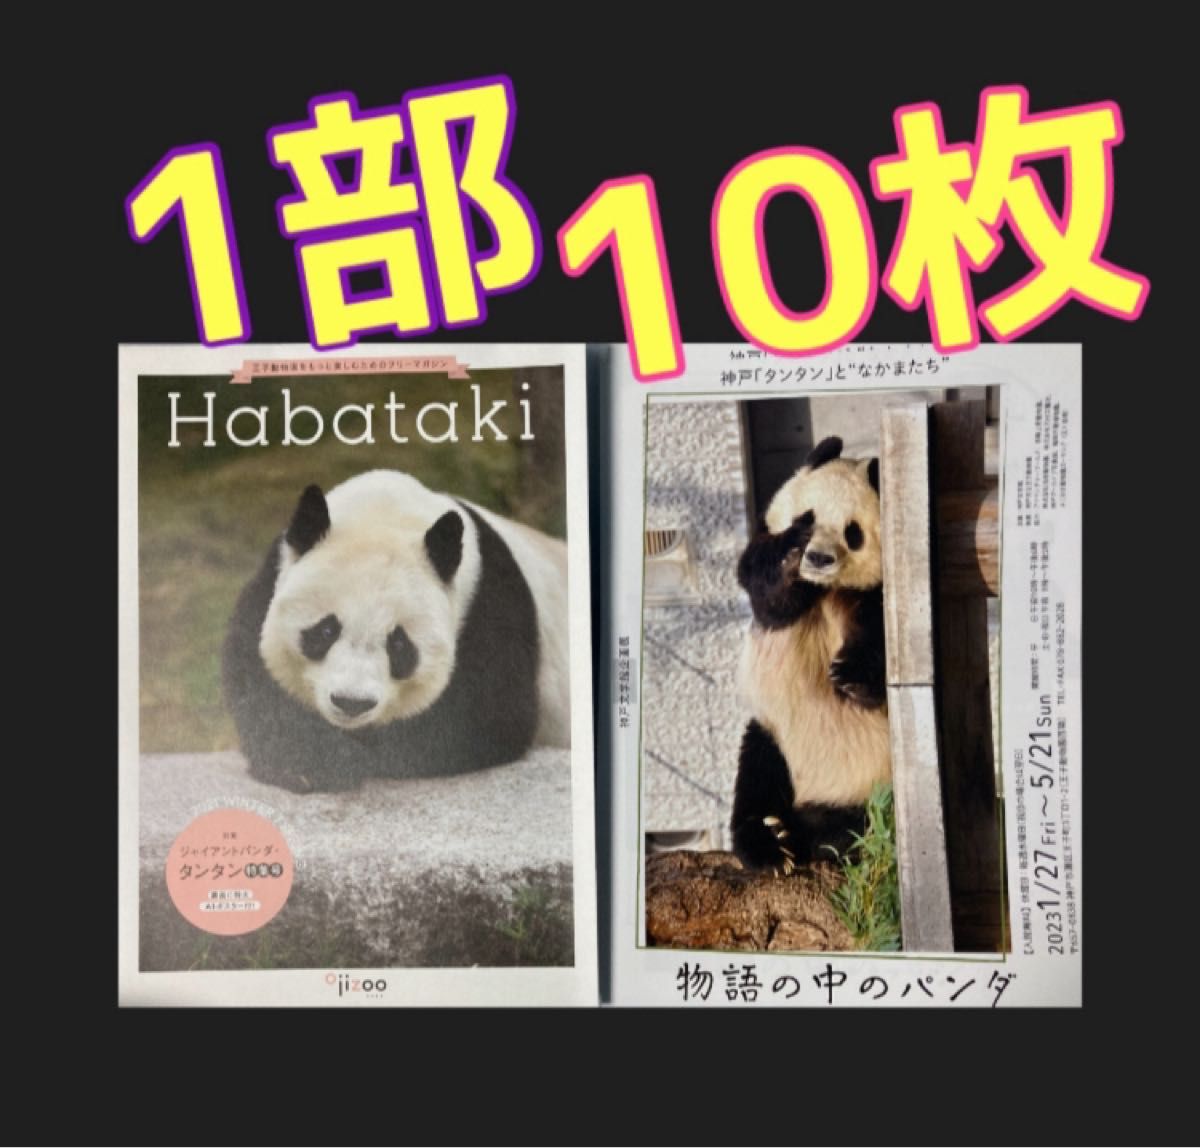 タンタン　神戸王子動物園　Habataki 特集号　物語の中のパンダ　フライヤー　ジャイアントパンダ